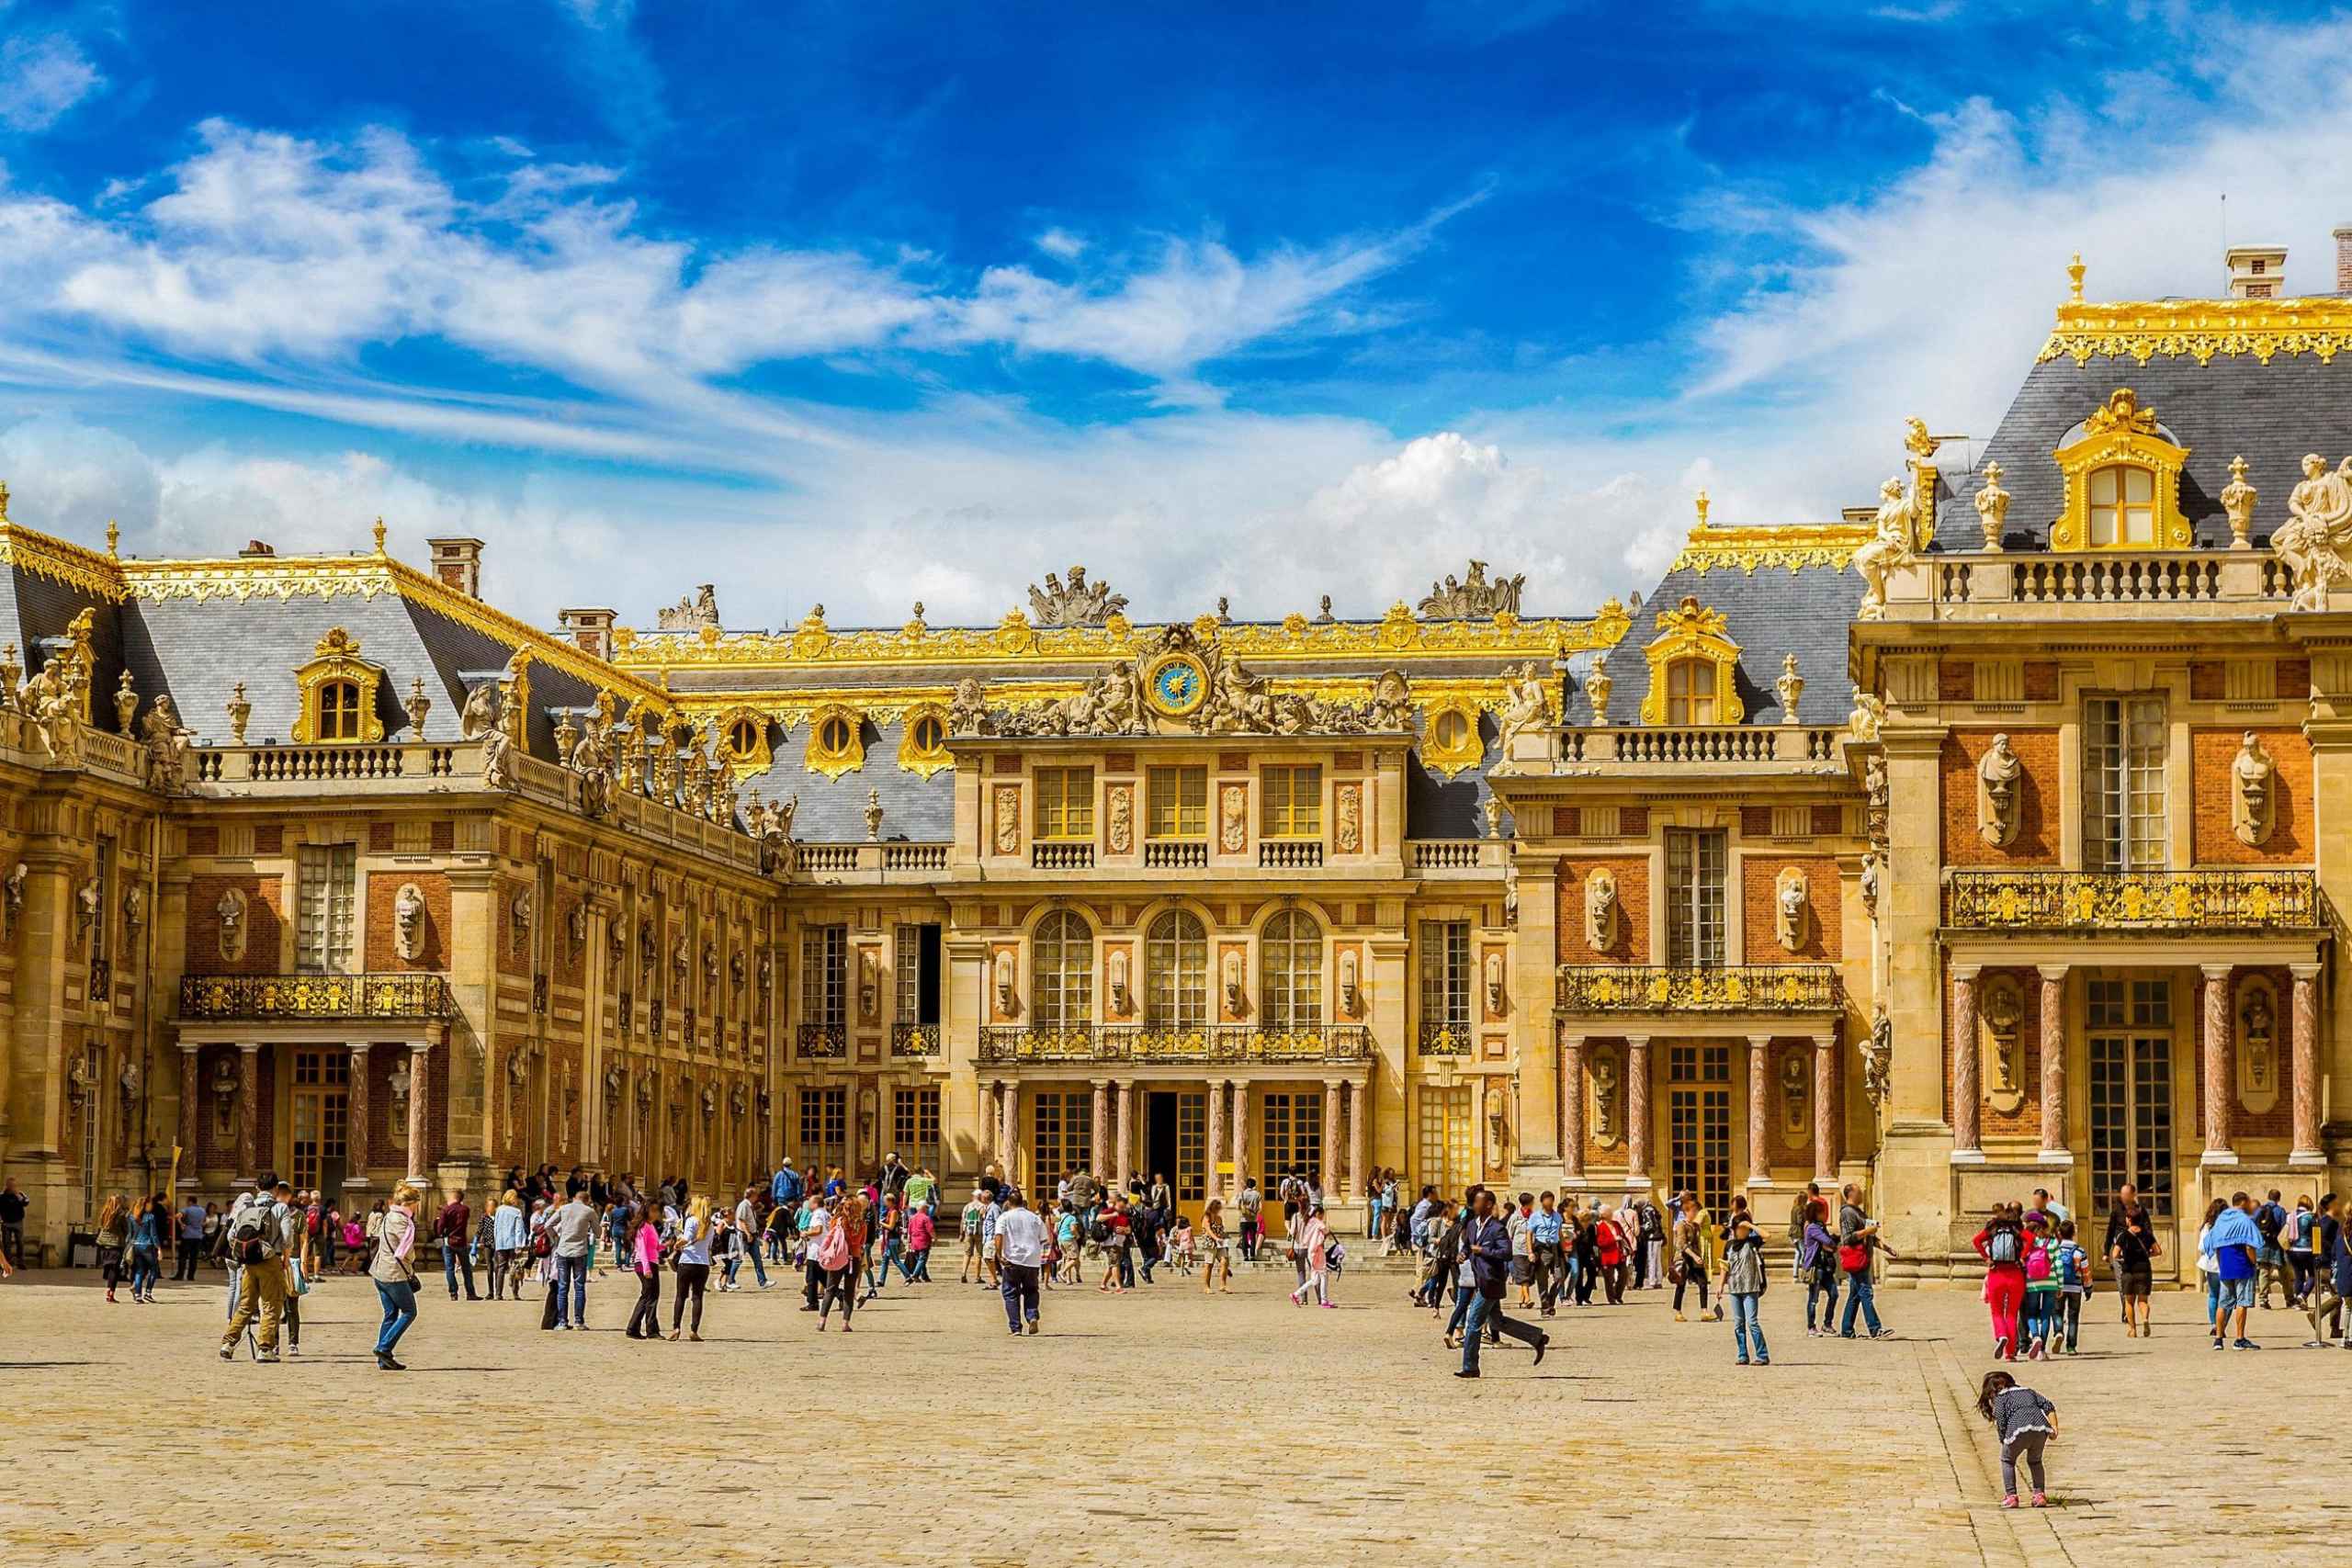 Версальский дворец в Париже. Версальский дворец Версаль Франция. Достопримечательности Парижа Версаль. Франция 17 век Версаль. Chateau versailles